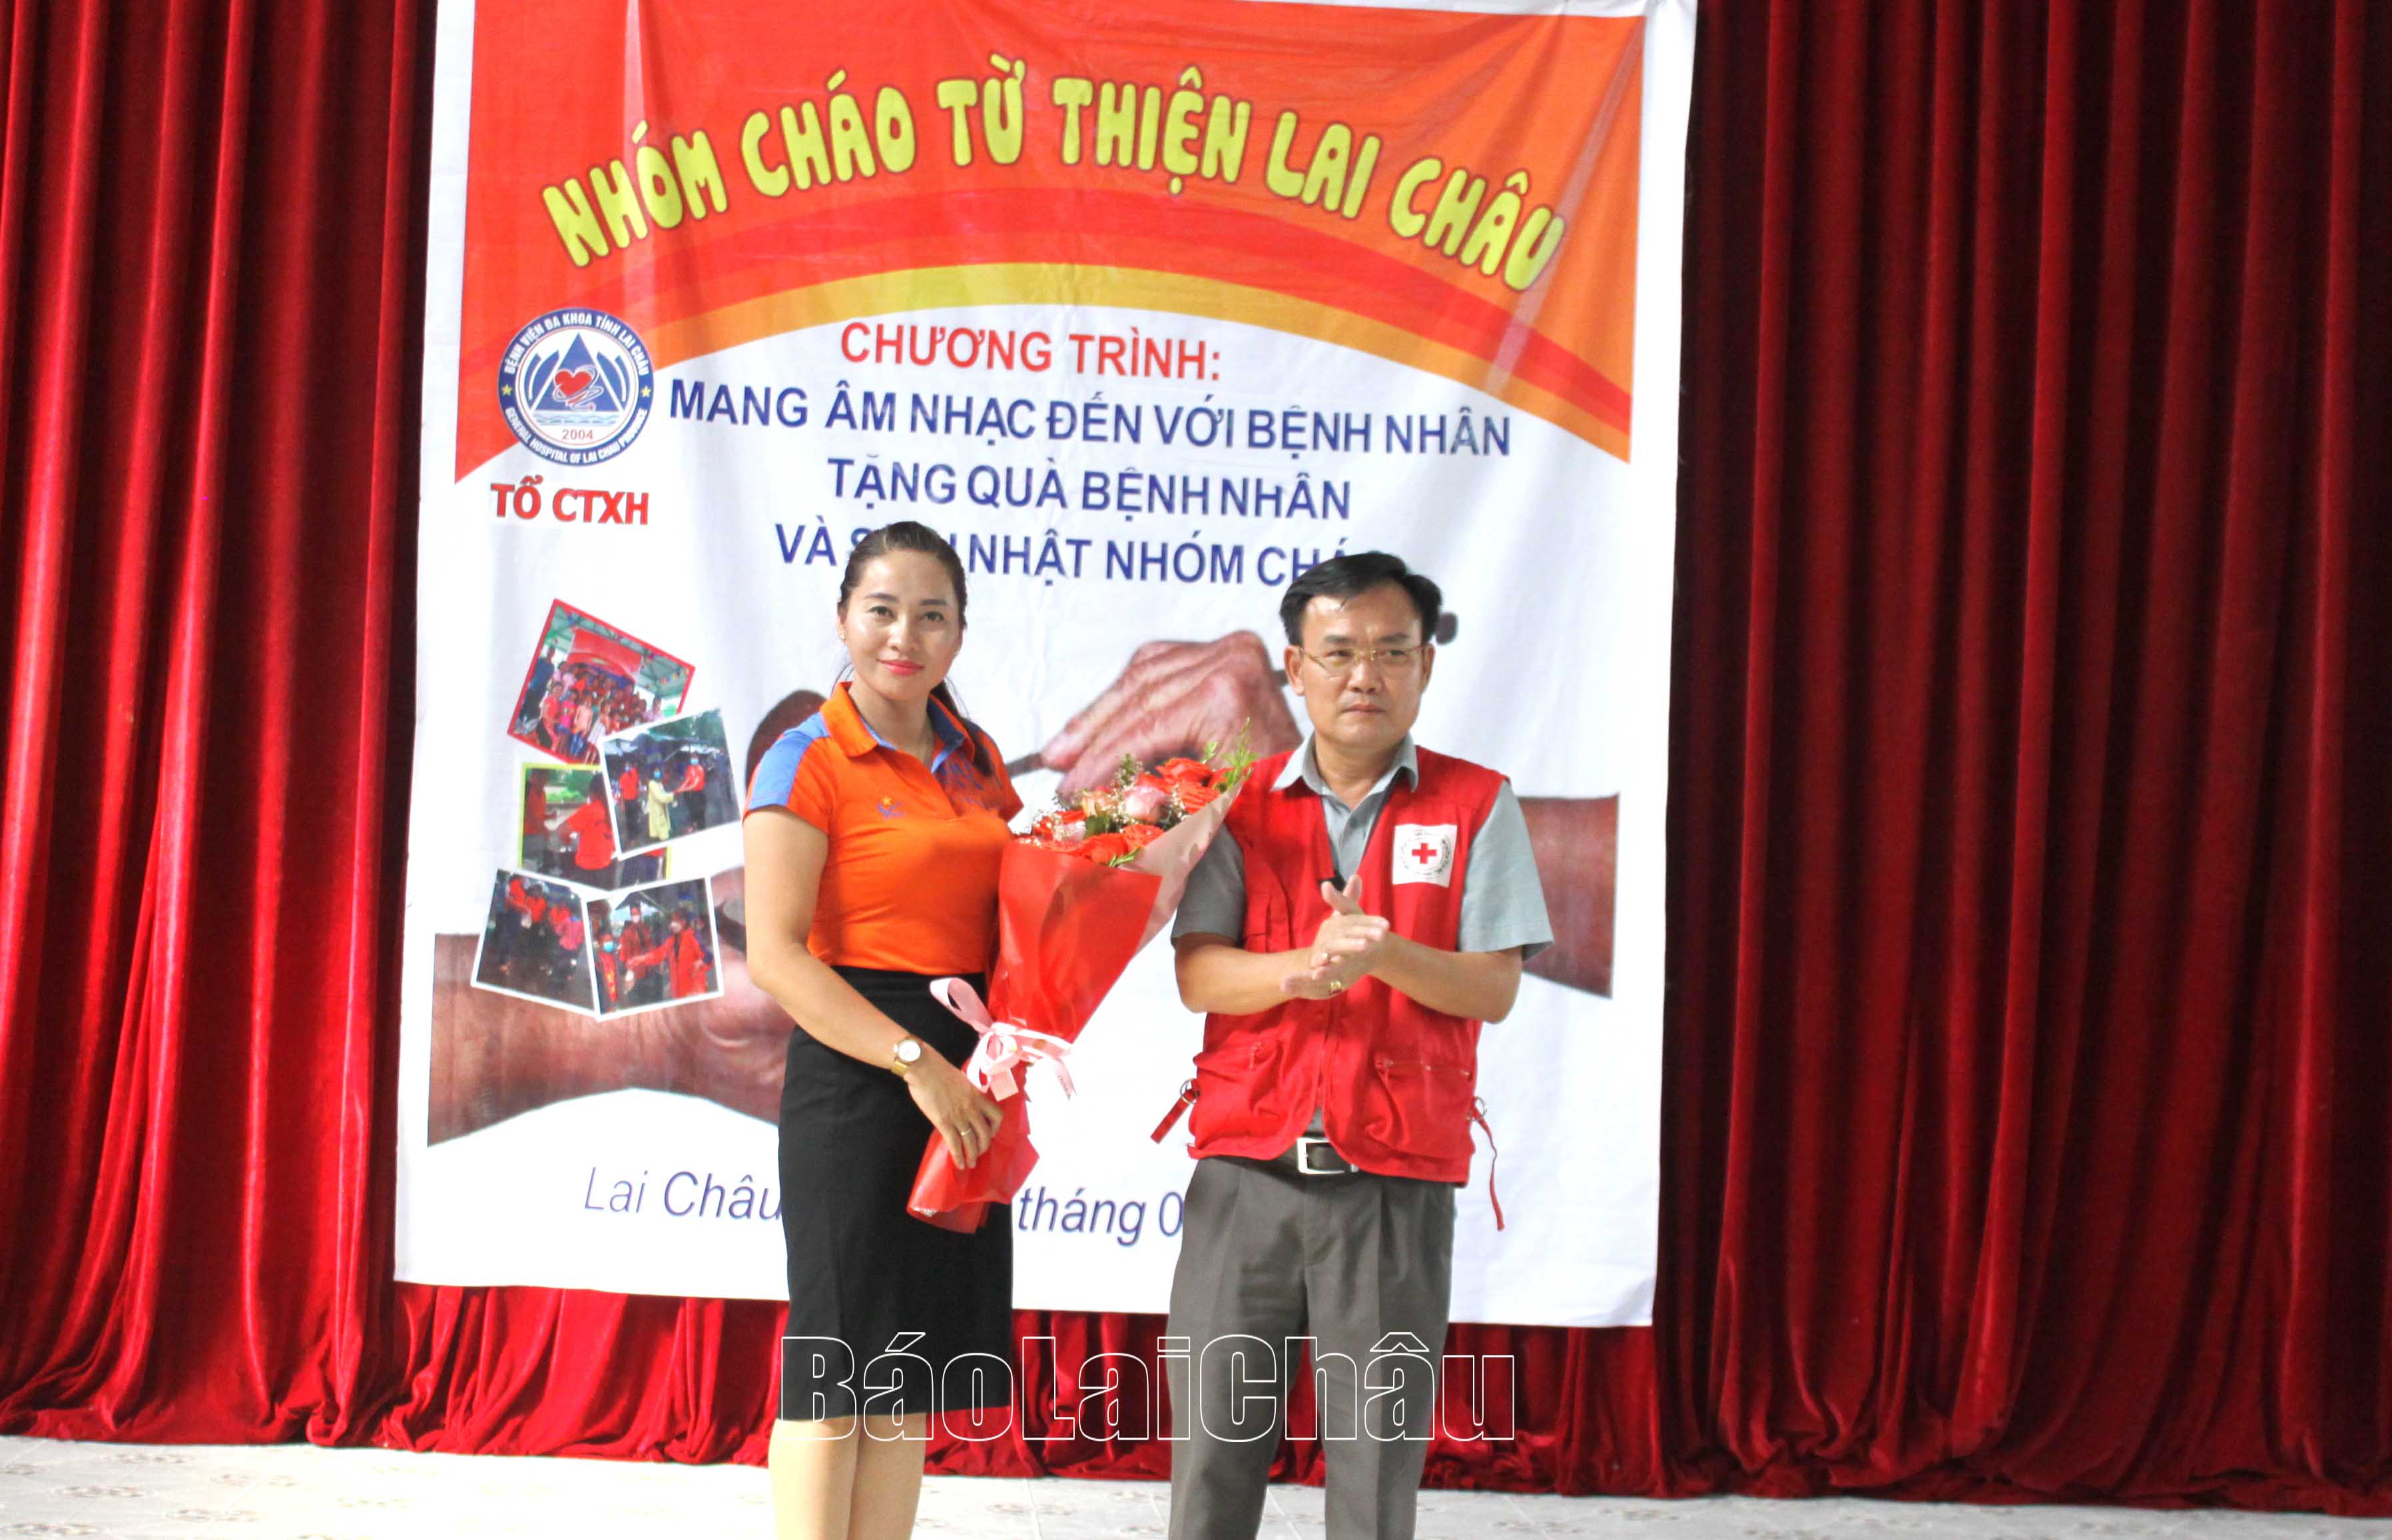 Ông Trần Cao Sơn - Phó Chủ tịch Hội Chữ thập đỏ tỉnh tặng bó hoa chúc mừng Nhóm cháo từ thiện Lai Châu tròn 7 tuổi.